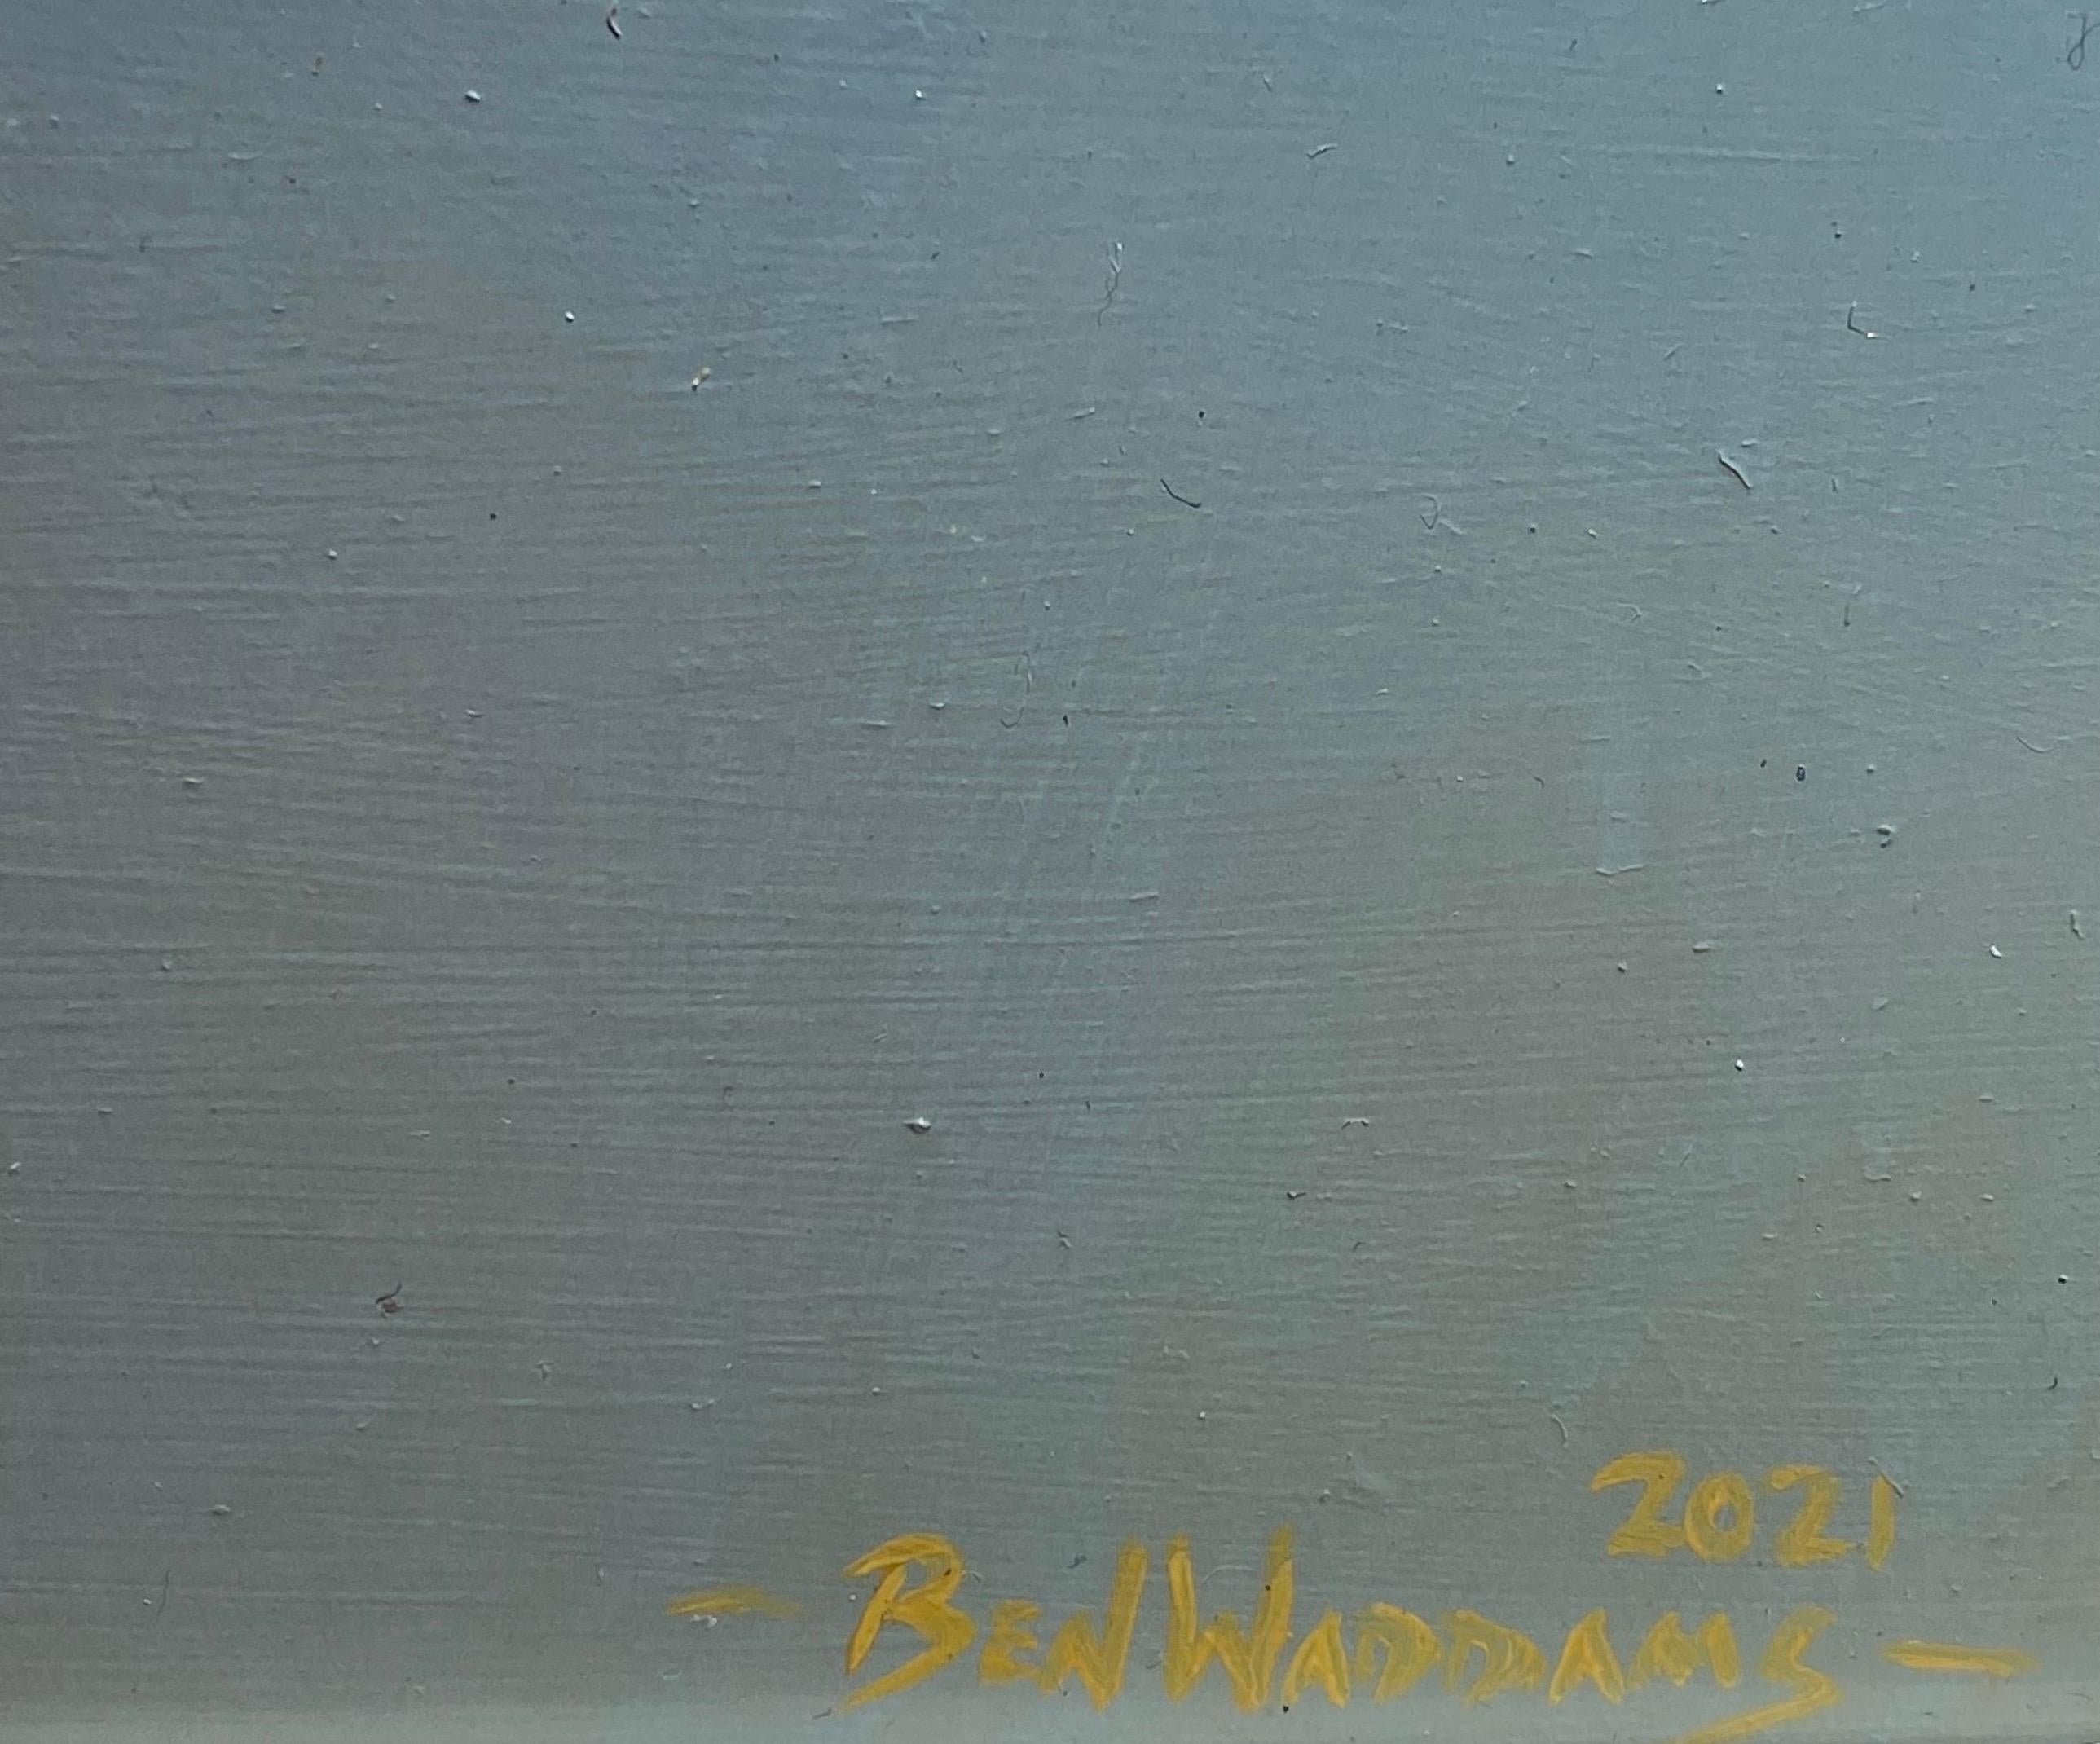 The Contemporary photorealist painting of a Wren small bird wild (peinture contemporaine photoréaliste d'un petit oiseau sauvage). - Photoréalisme Painting par Ben Waddams